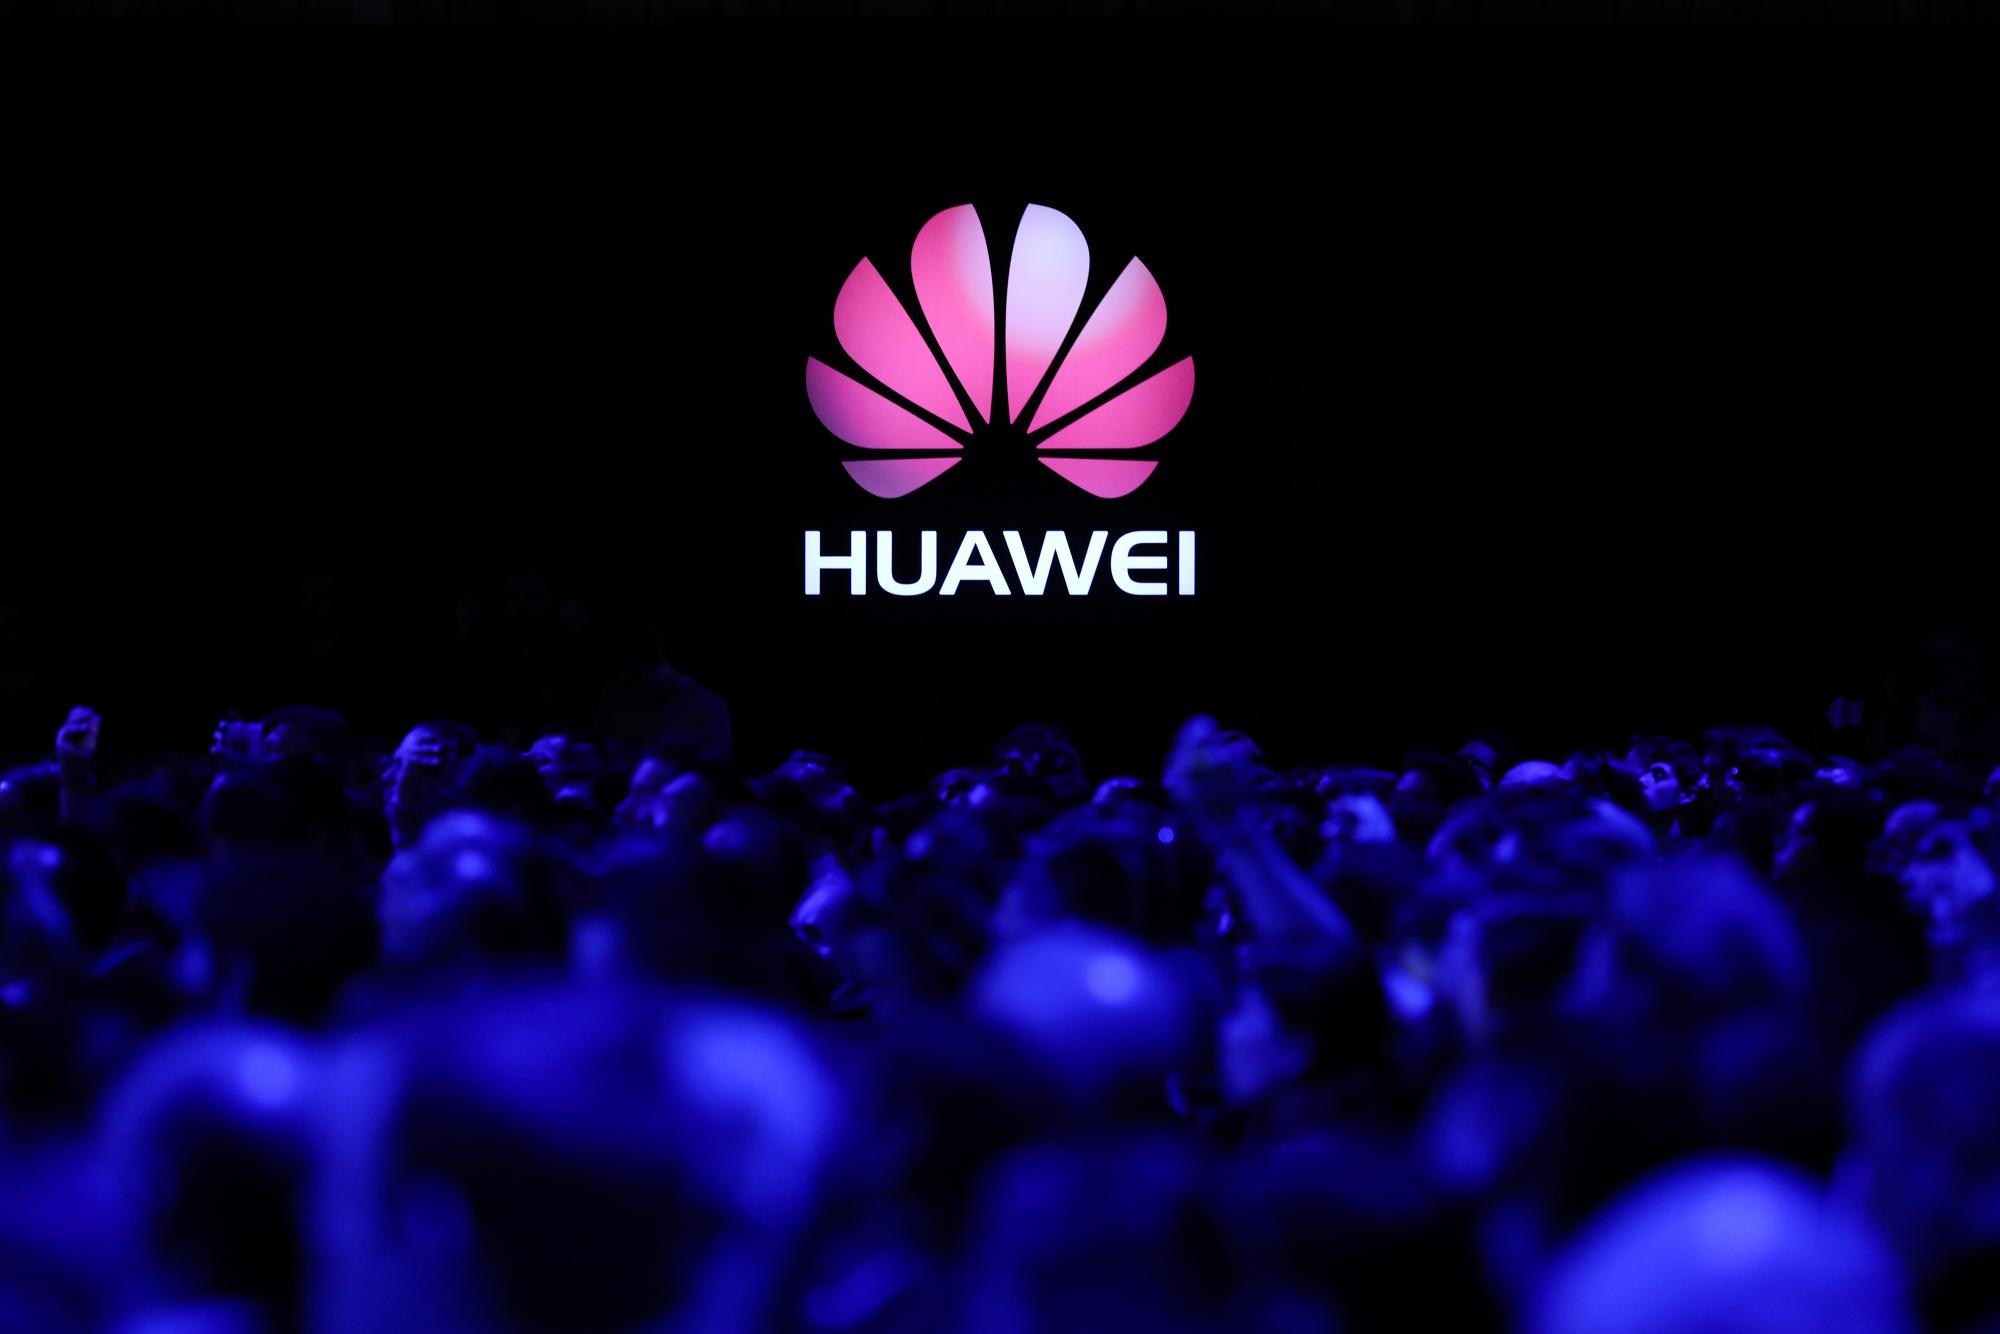 Huawei Logo - Huawei-logo - PhoneRazer